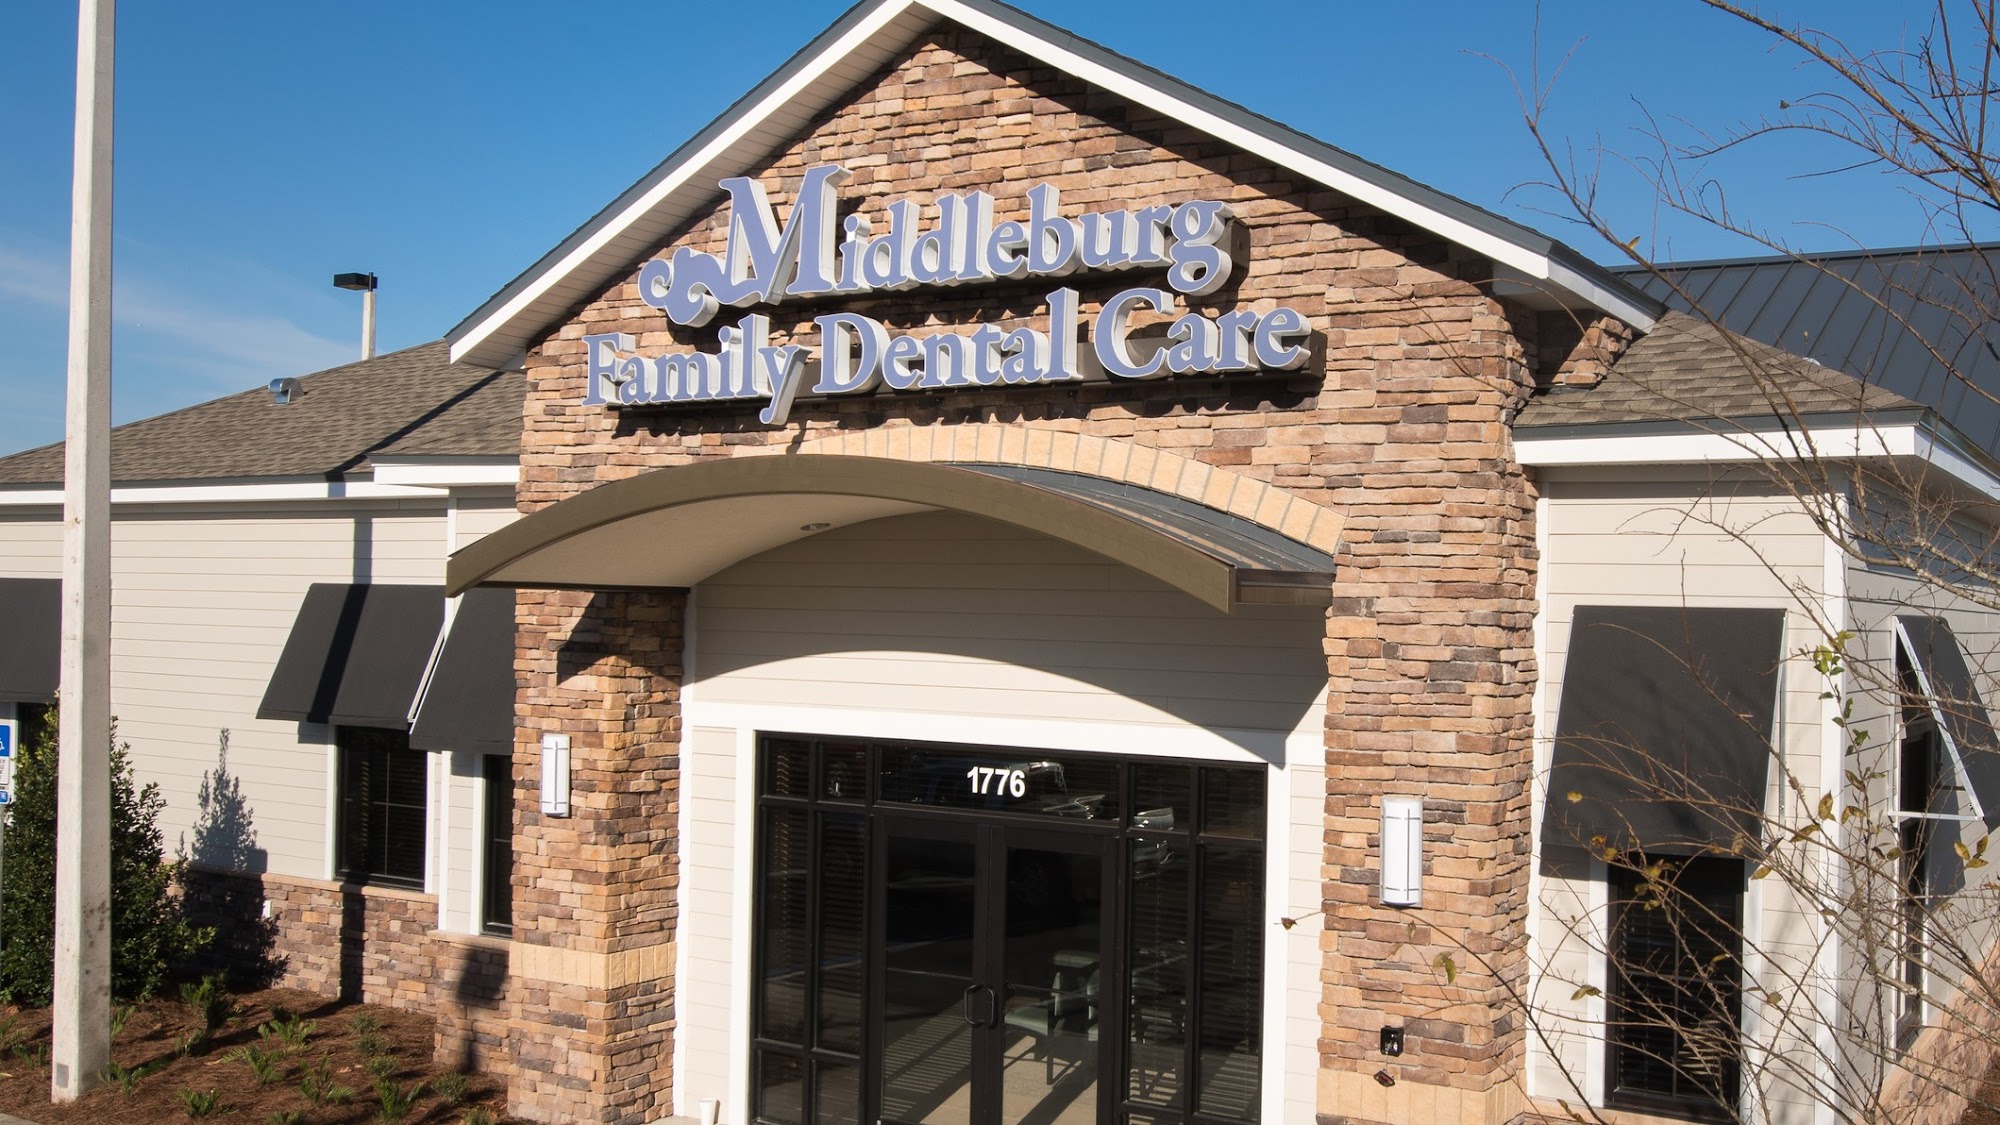 Middleburg Family Dental Care